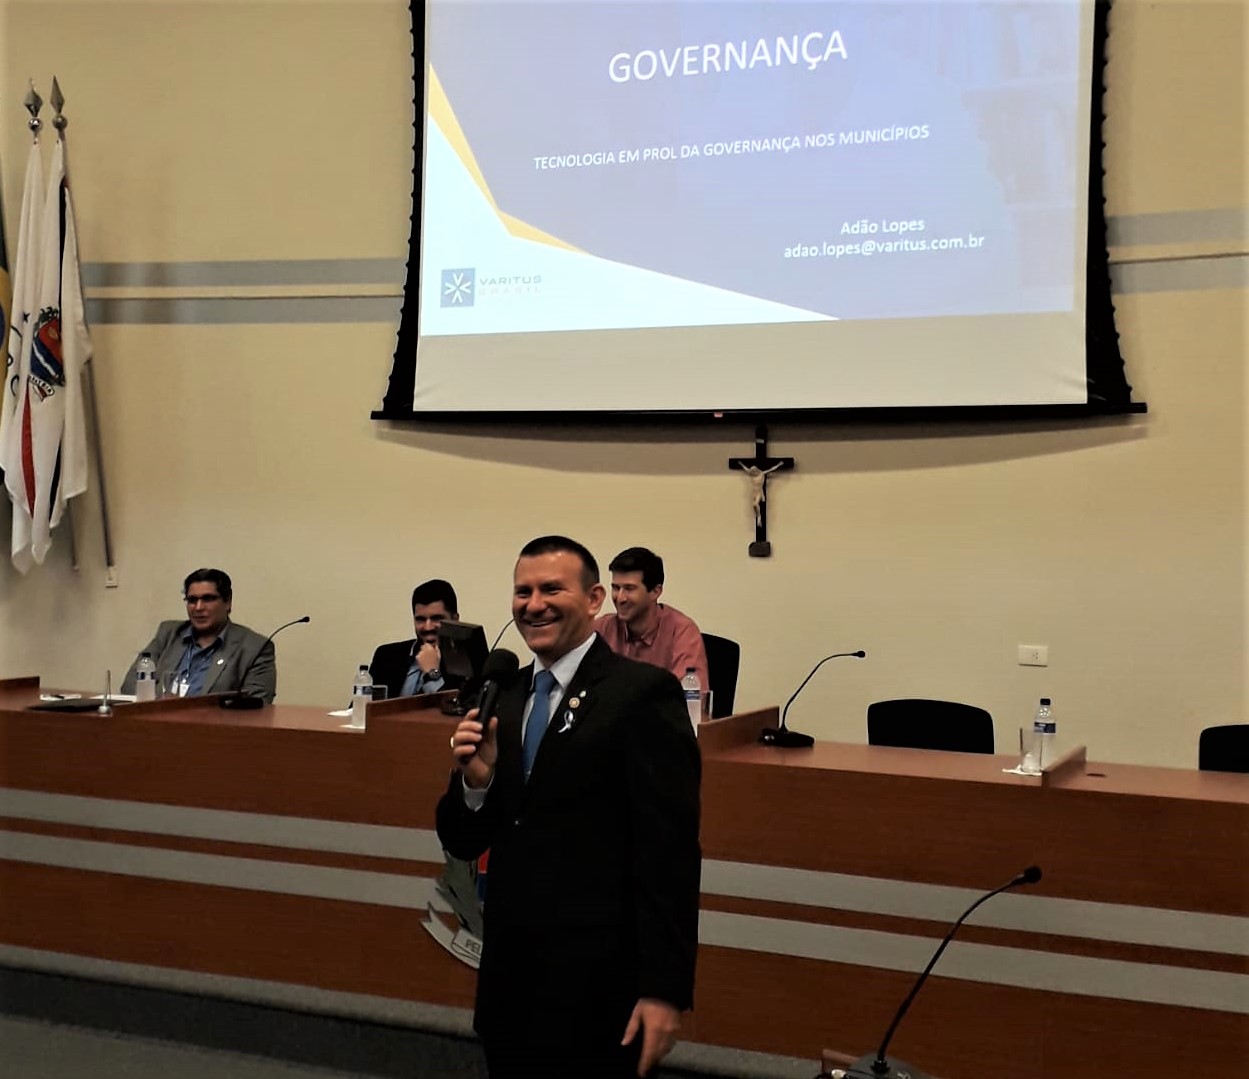 CEO da VARITUS fala sobre governança em ciclo de palestras da Câmara de Araras